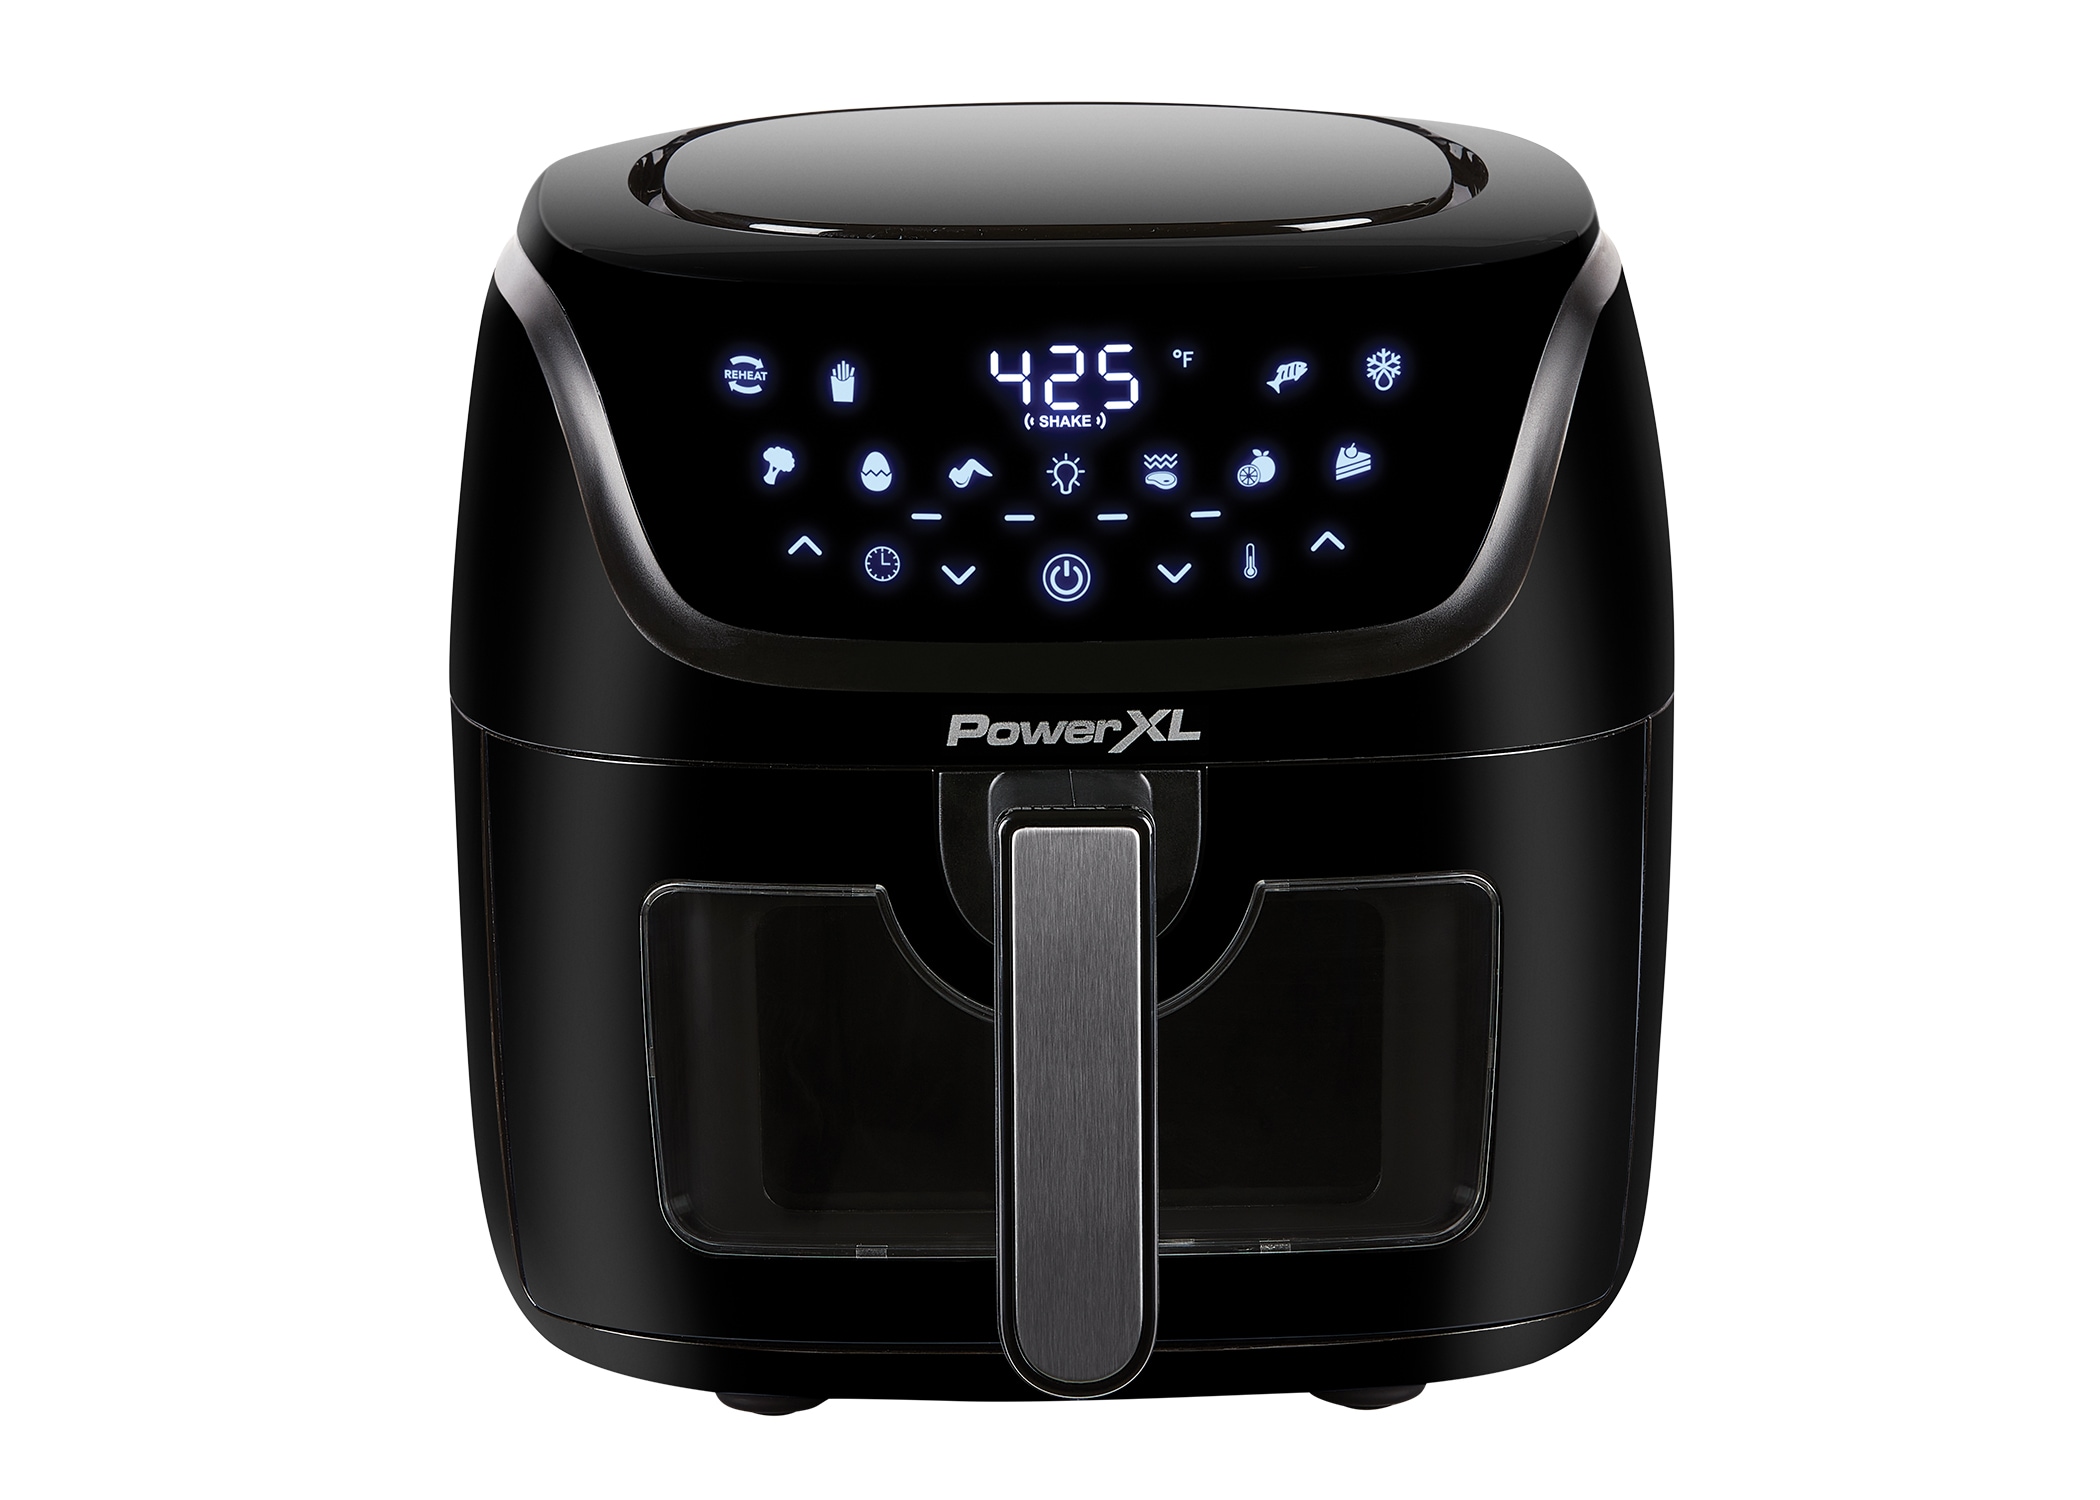 PowerXL Vortex 6-Qt. Air Fryer